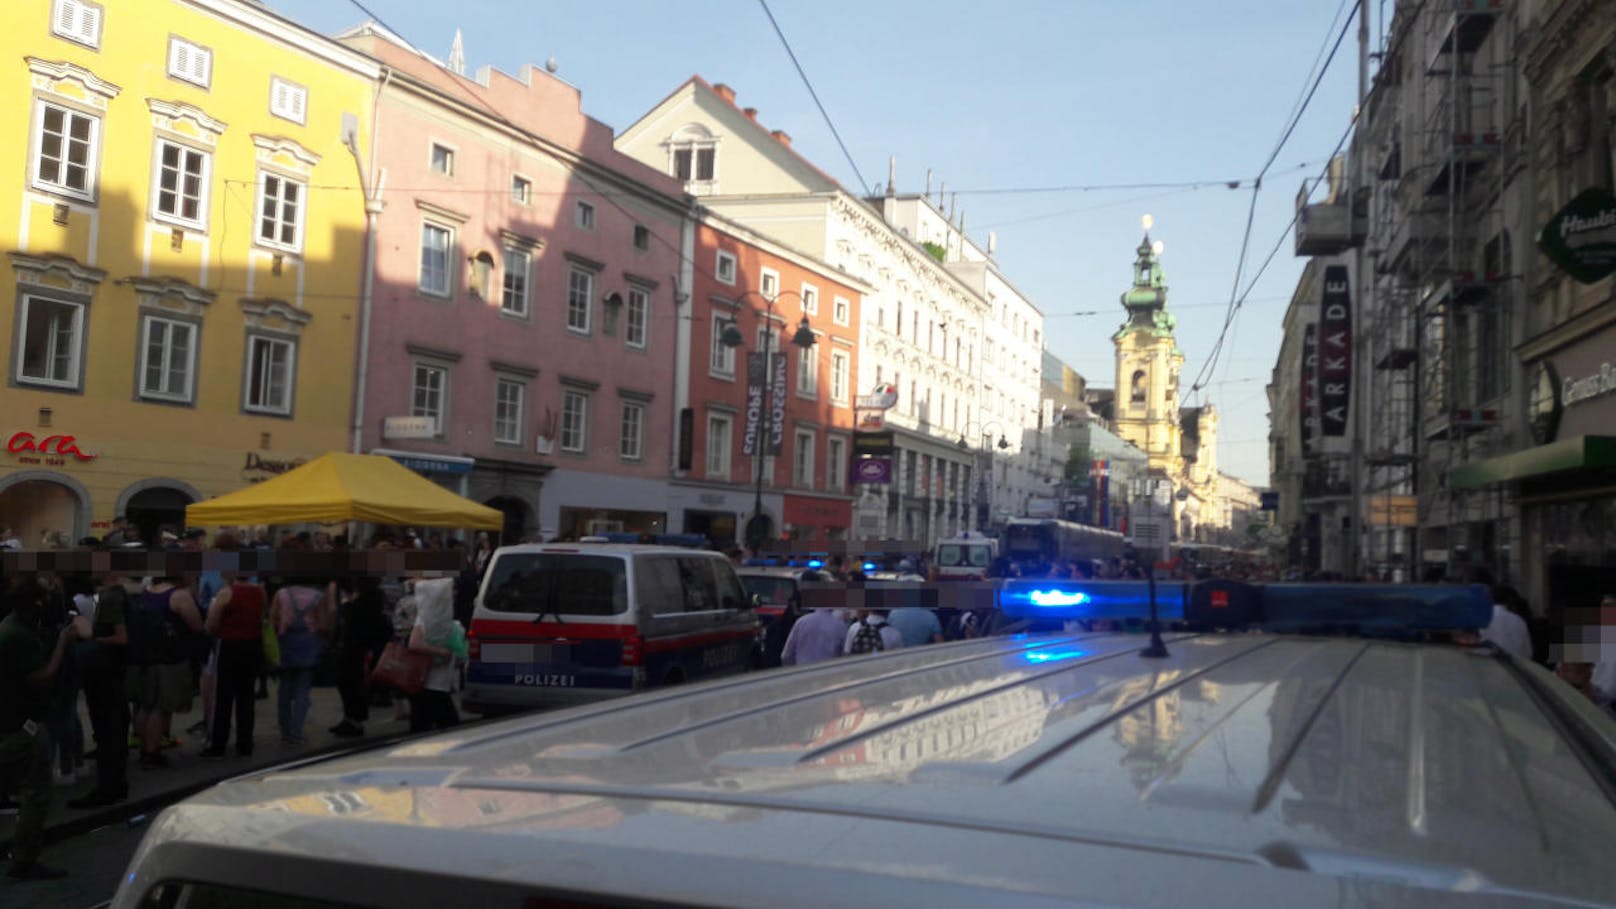 Großangelegter Polizeieinsatz in der Linzer City gegen 17:45 Uhr. Fünfzehn Polizeiautos sperren mit Blaulicht den Bereich rund um den Taubenmarkt ab.